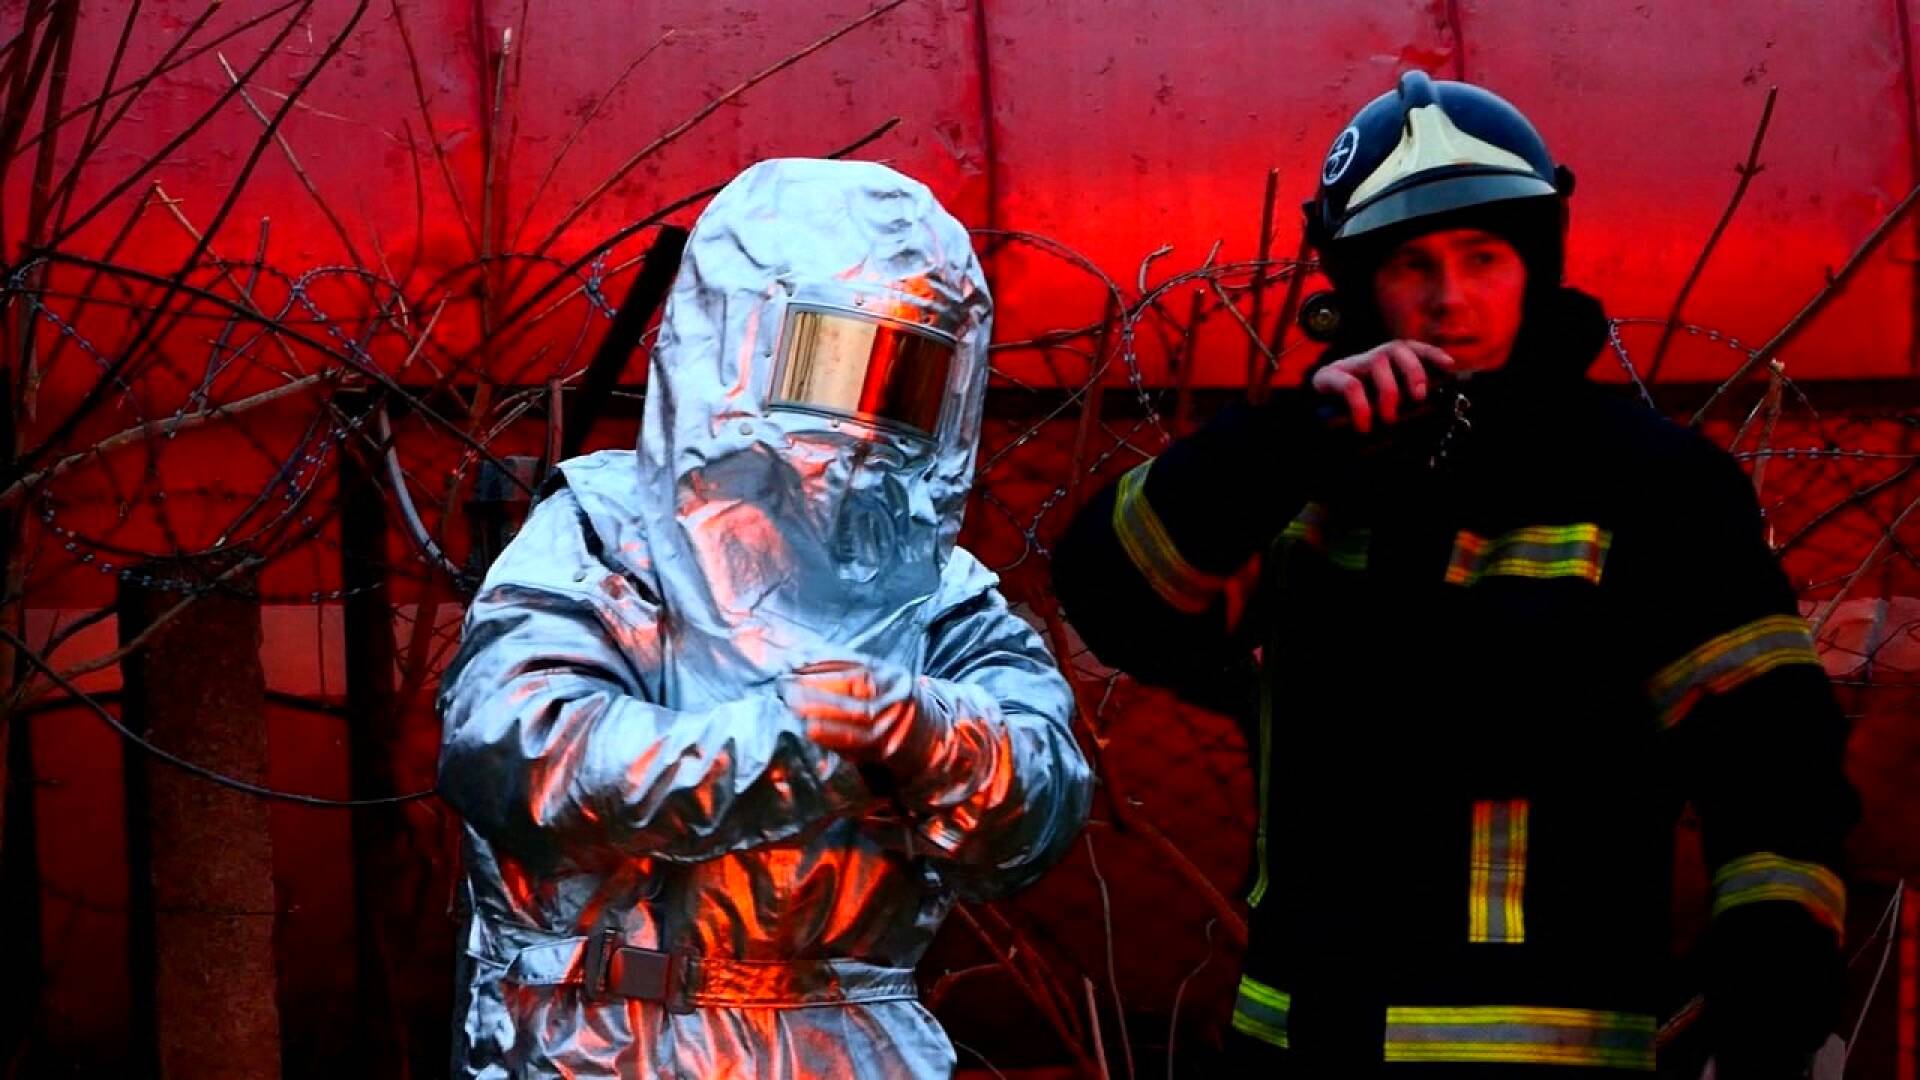 Palomiehiä sammuttamassa venäläisten iskussa tuleen syttynyttä polttoainevarastoa Lvivissä. Ukrainalaisten viranomaisten julkaisema kuva.